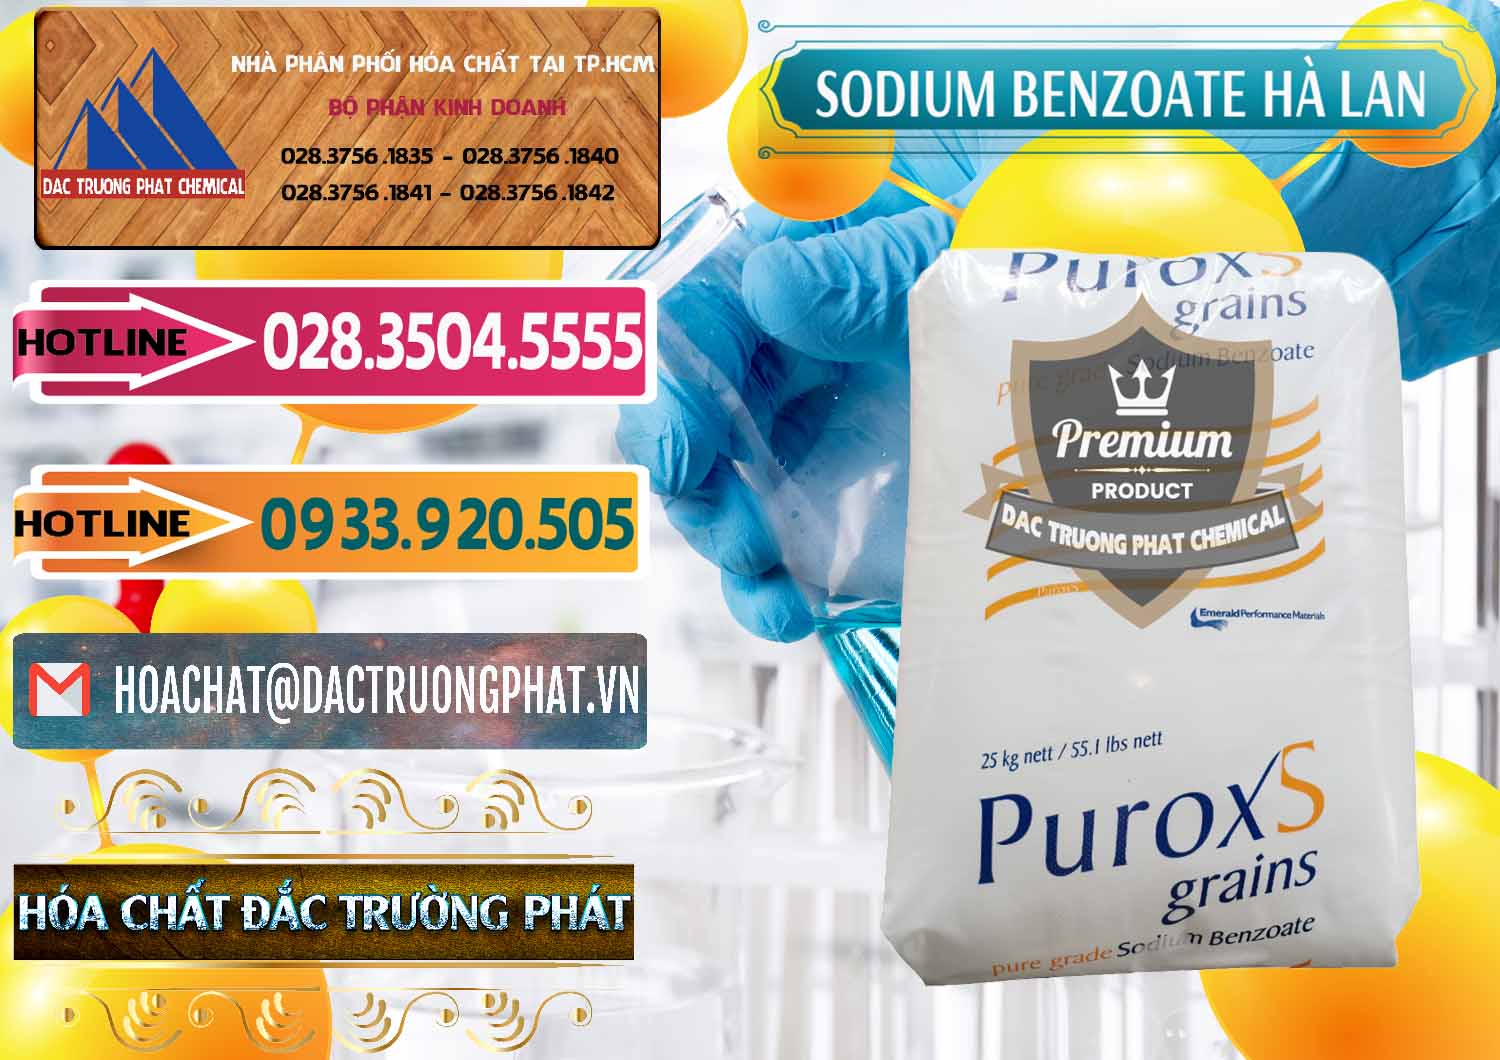 Nơi bán ( phân phối ) Sodium Benzoate - Mốc Bột Puroxs Hà Lan Netherlands - 0467 - Chuyên phân phối và bán hóa chất tại TP.HCM - dactruongphat.vn